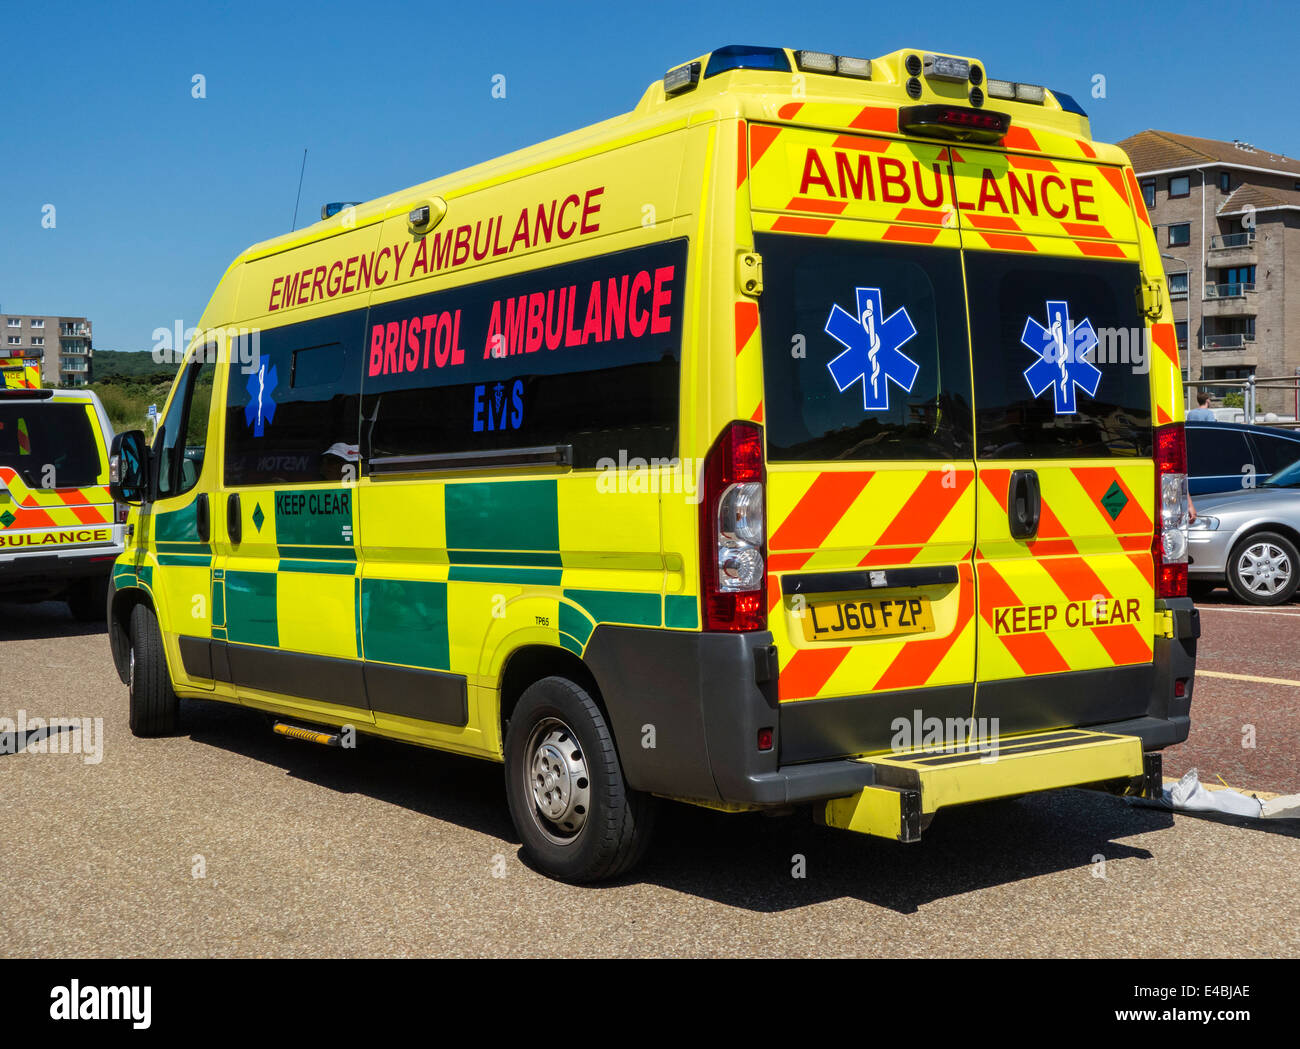 Bristol Emergency Ambulance Vehicle at Western-super-Mare event, Somerset, England, UK Stock Photo